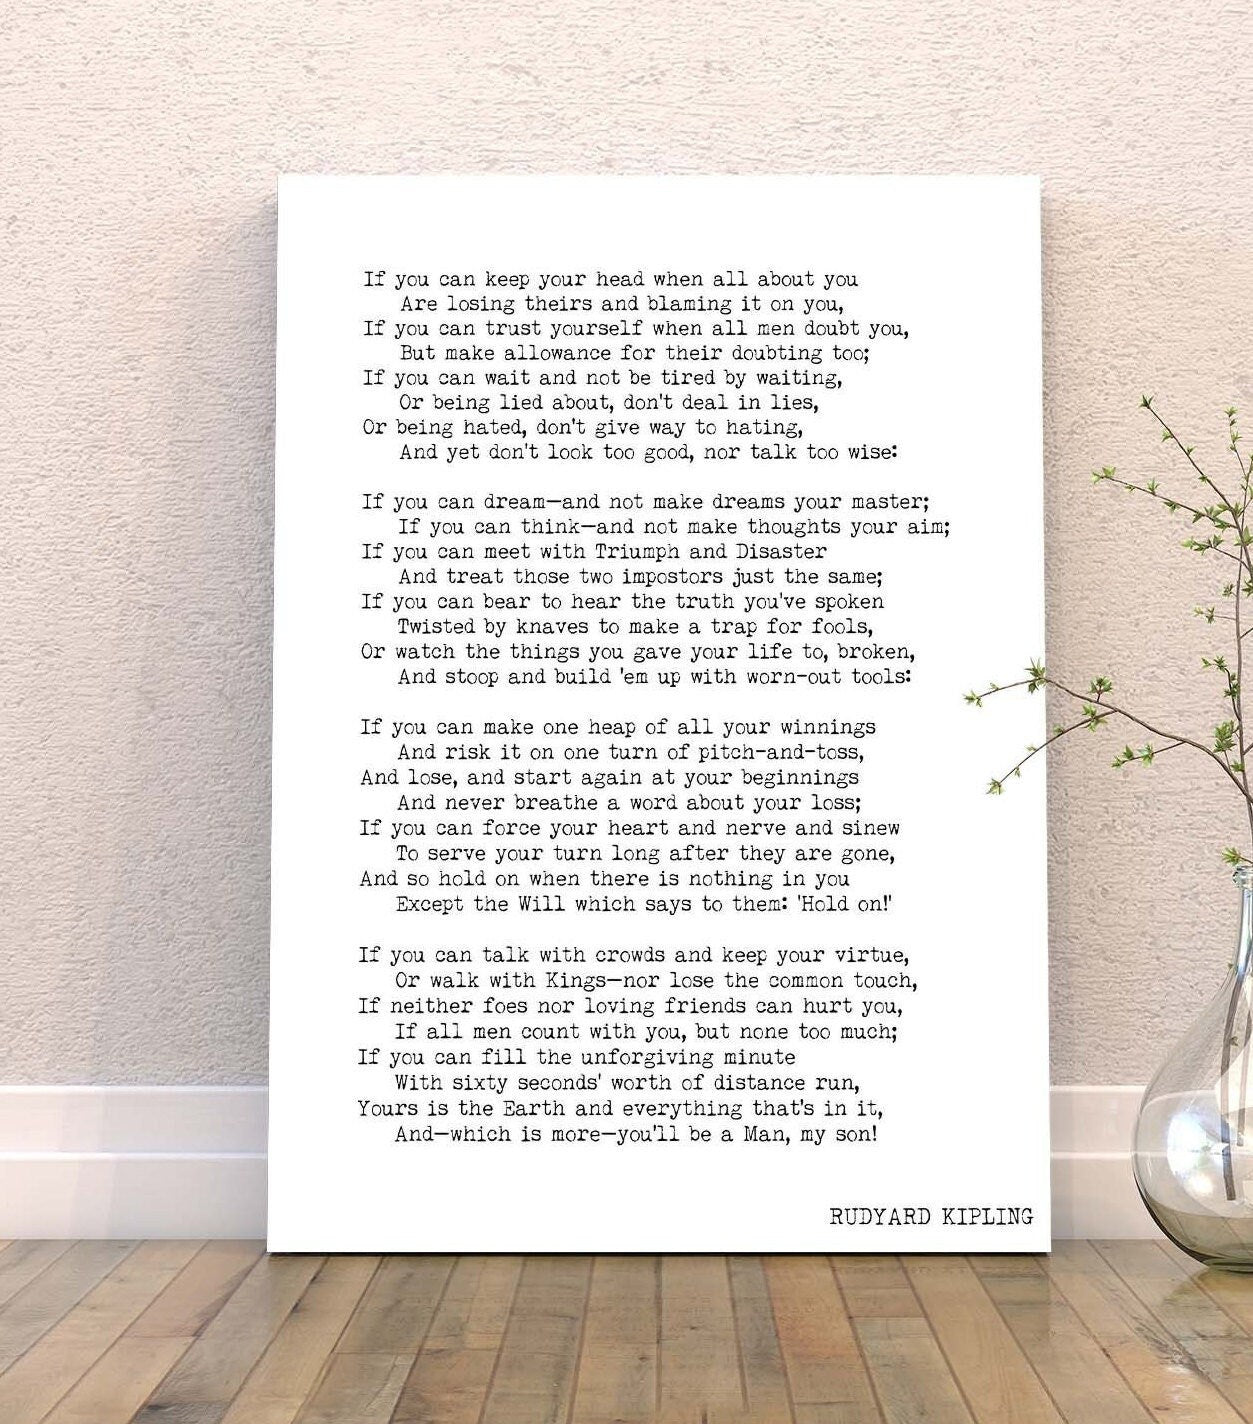 IF by Kipling Poem Canvas Art Print, Rudyard Kipling Poetry Art Print